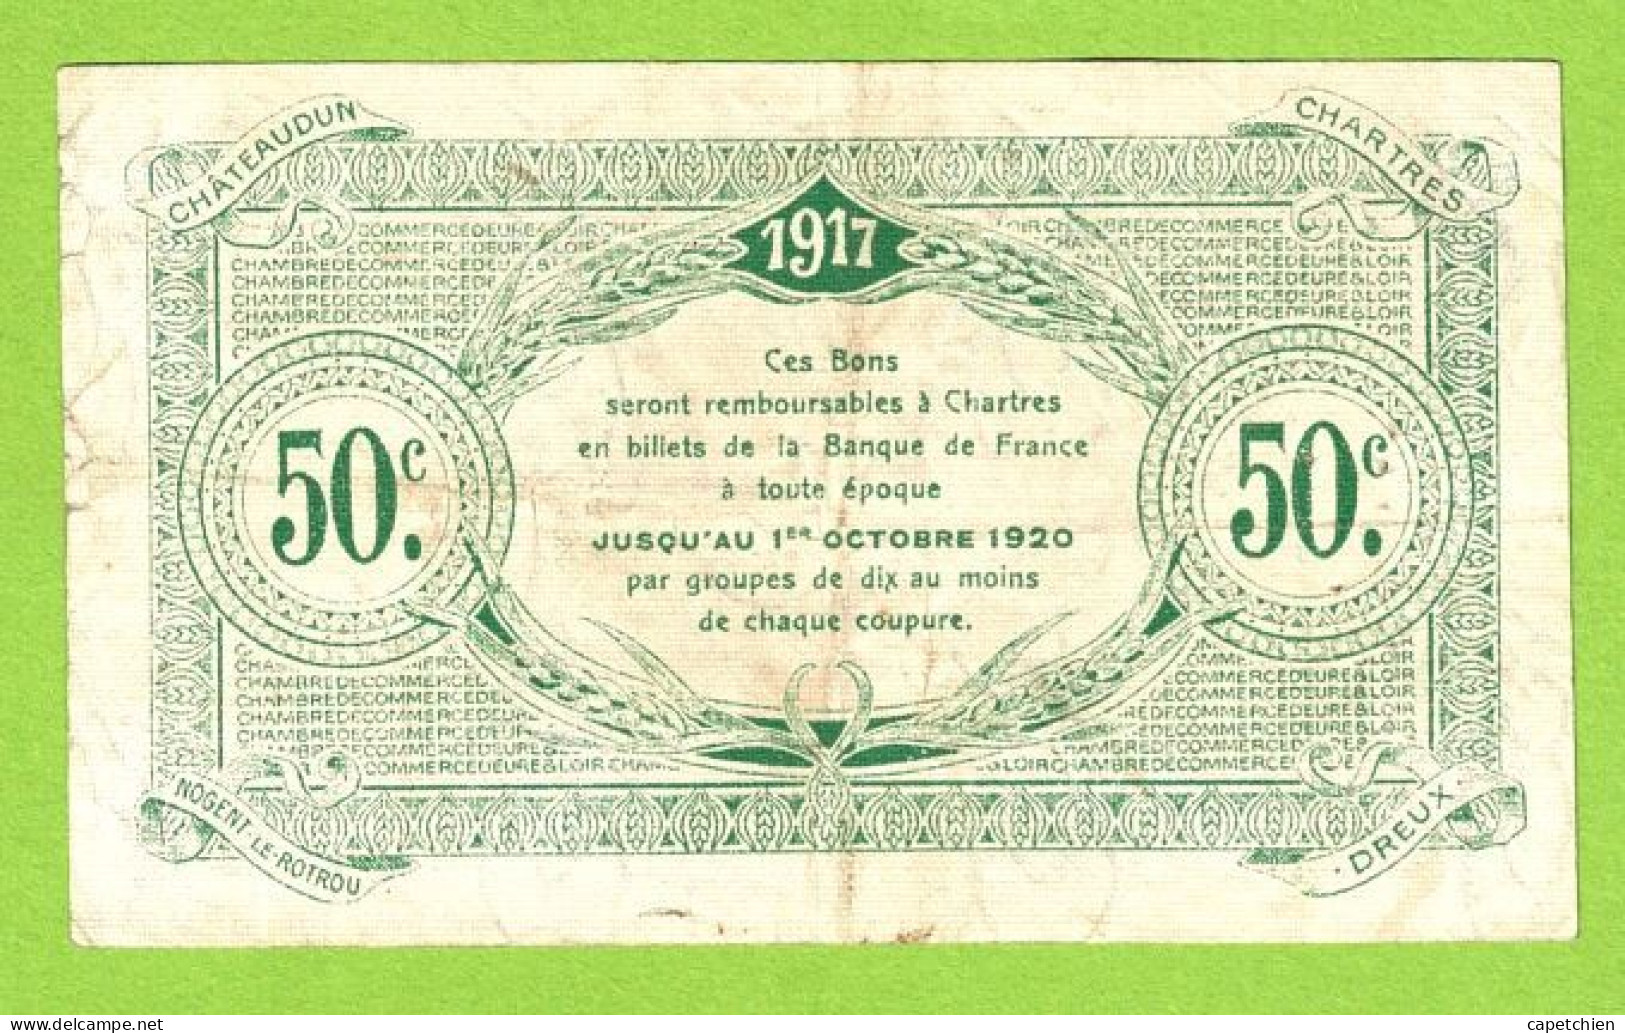 FRANCE / EURE & LOIR / 50 CENTIMES /  AVRIL 1917  / 2ème EMISSION / PAS DE NUMERO - Camera Di Commercio